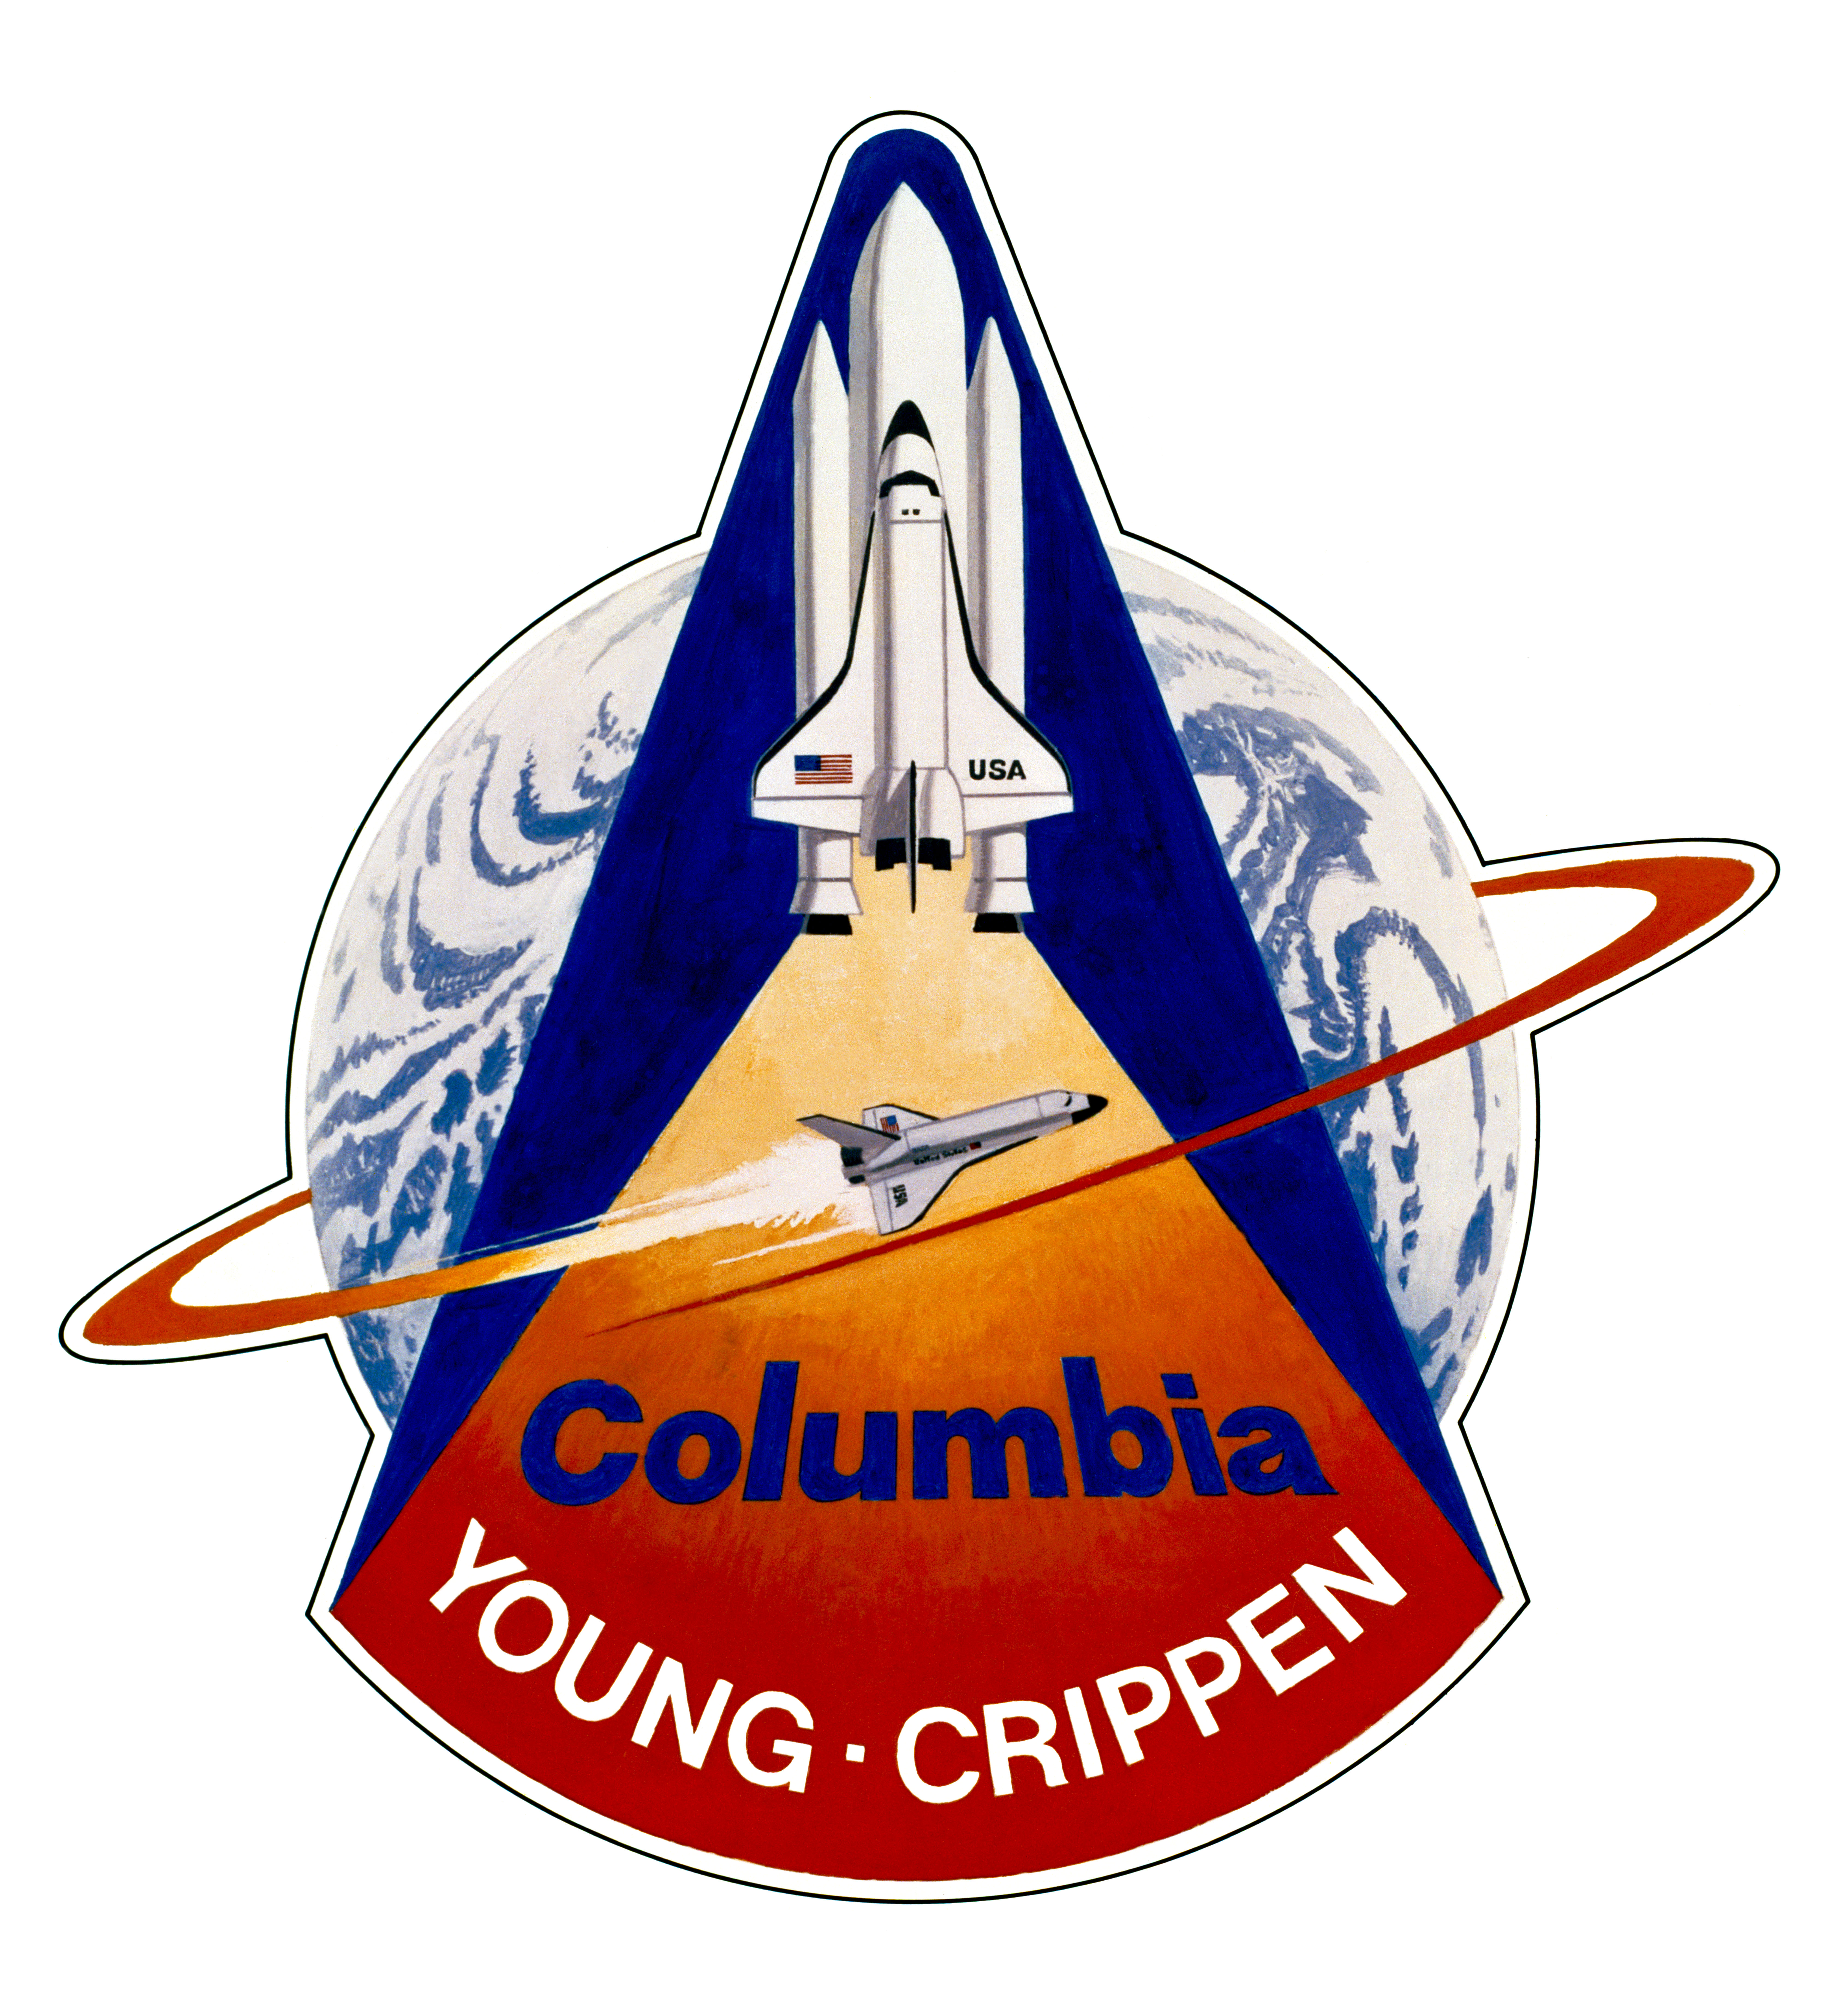 earth space nasa logo